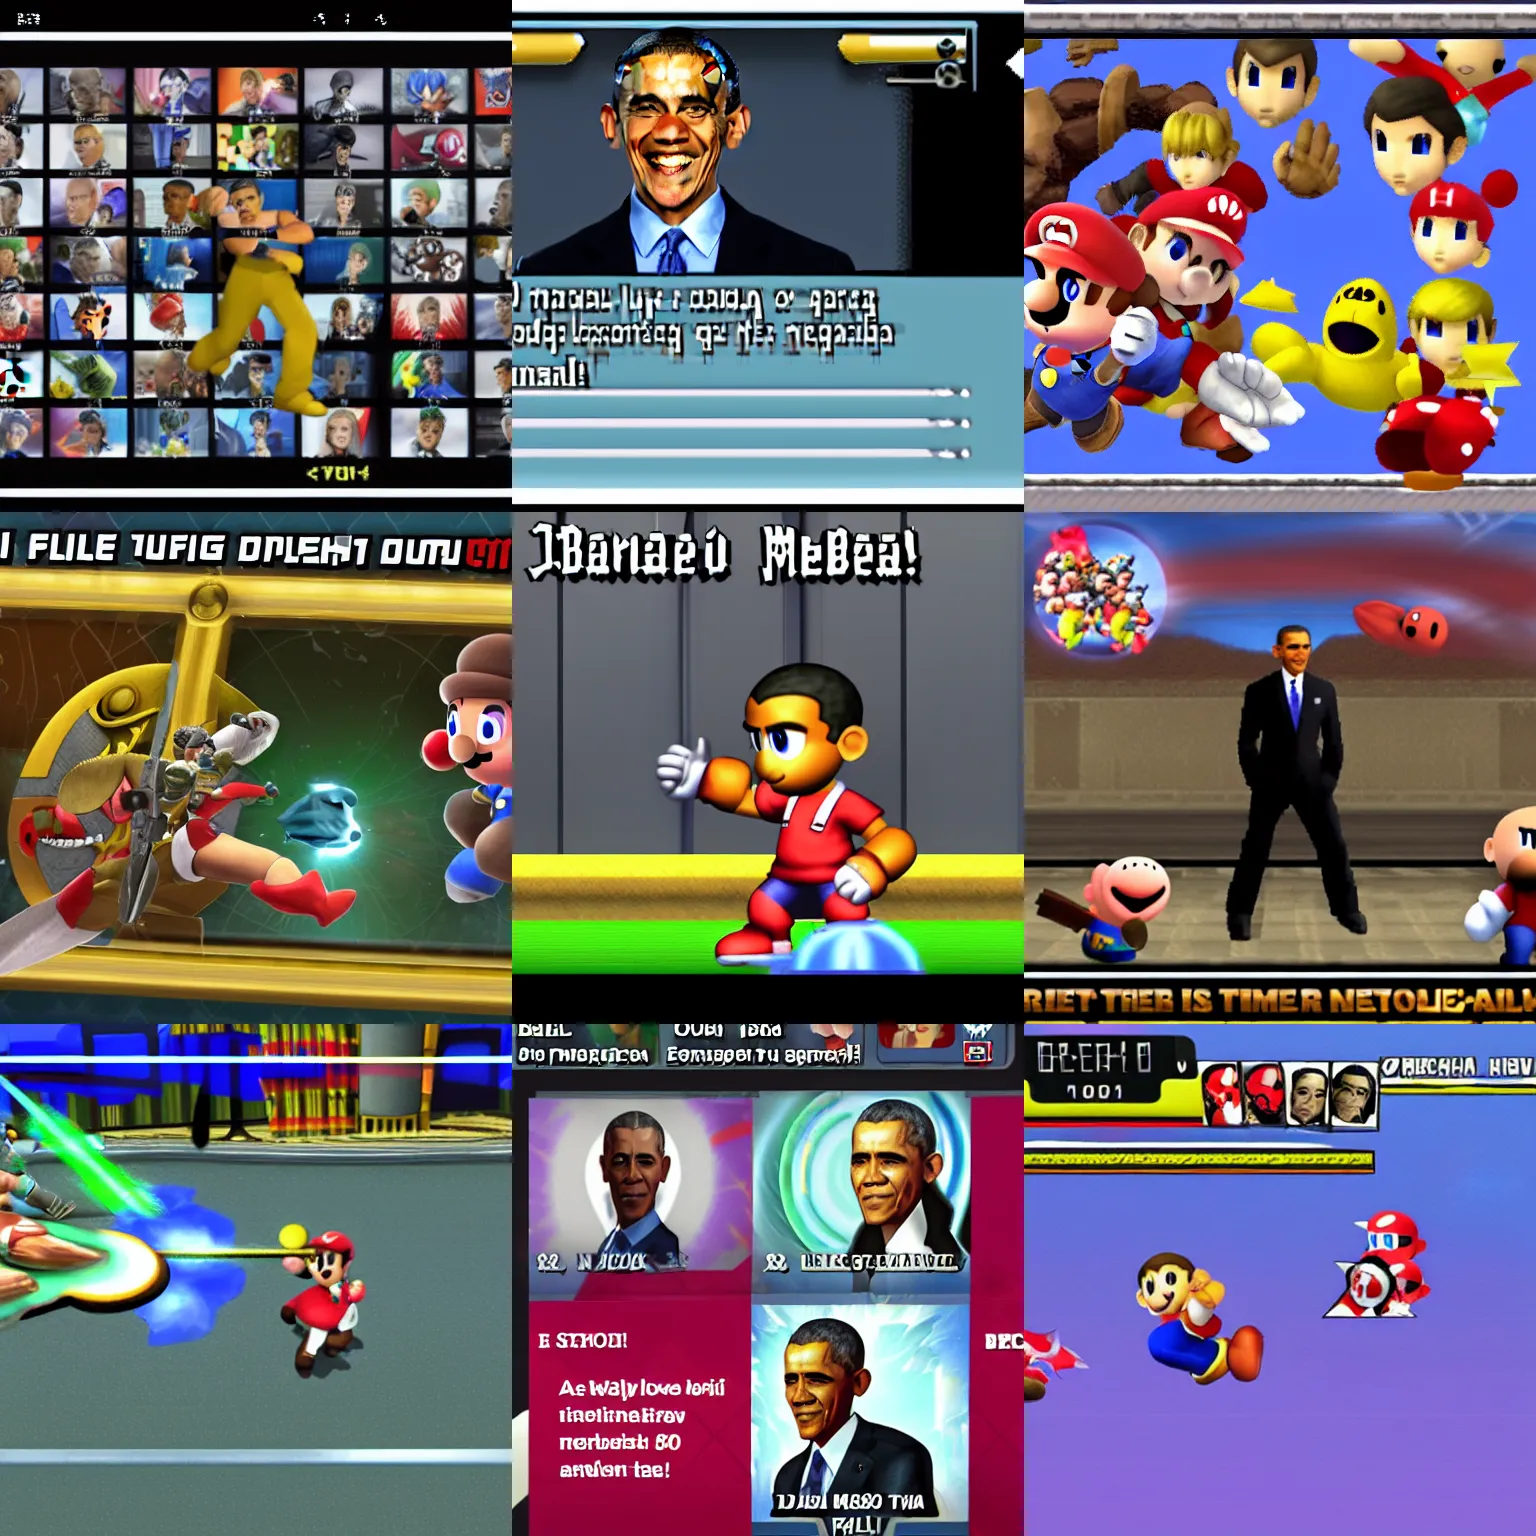 Prompt: Super Smash Bros Melee screenshot of Barack Obama as a DLC fighter